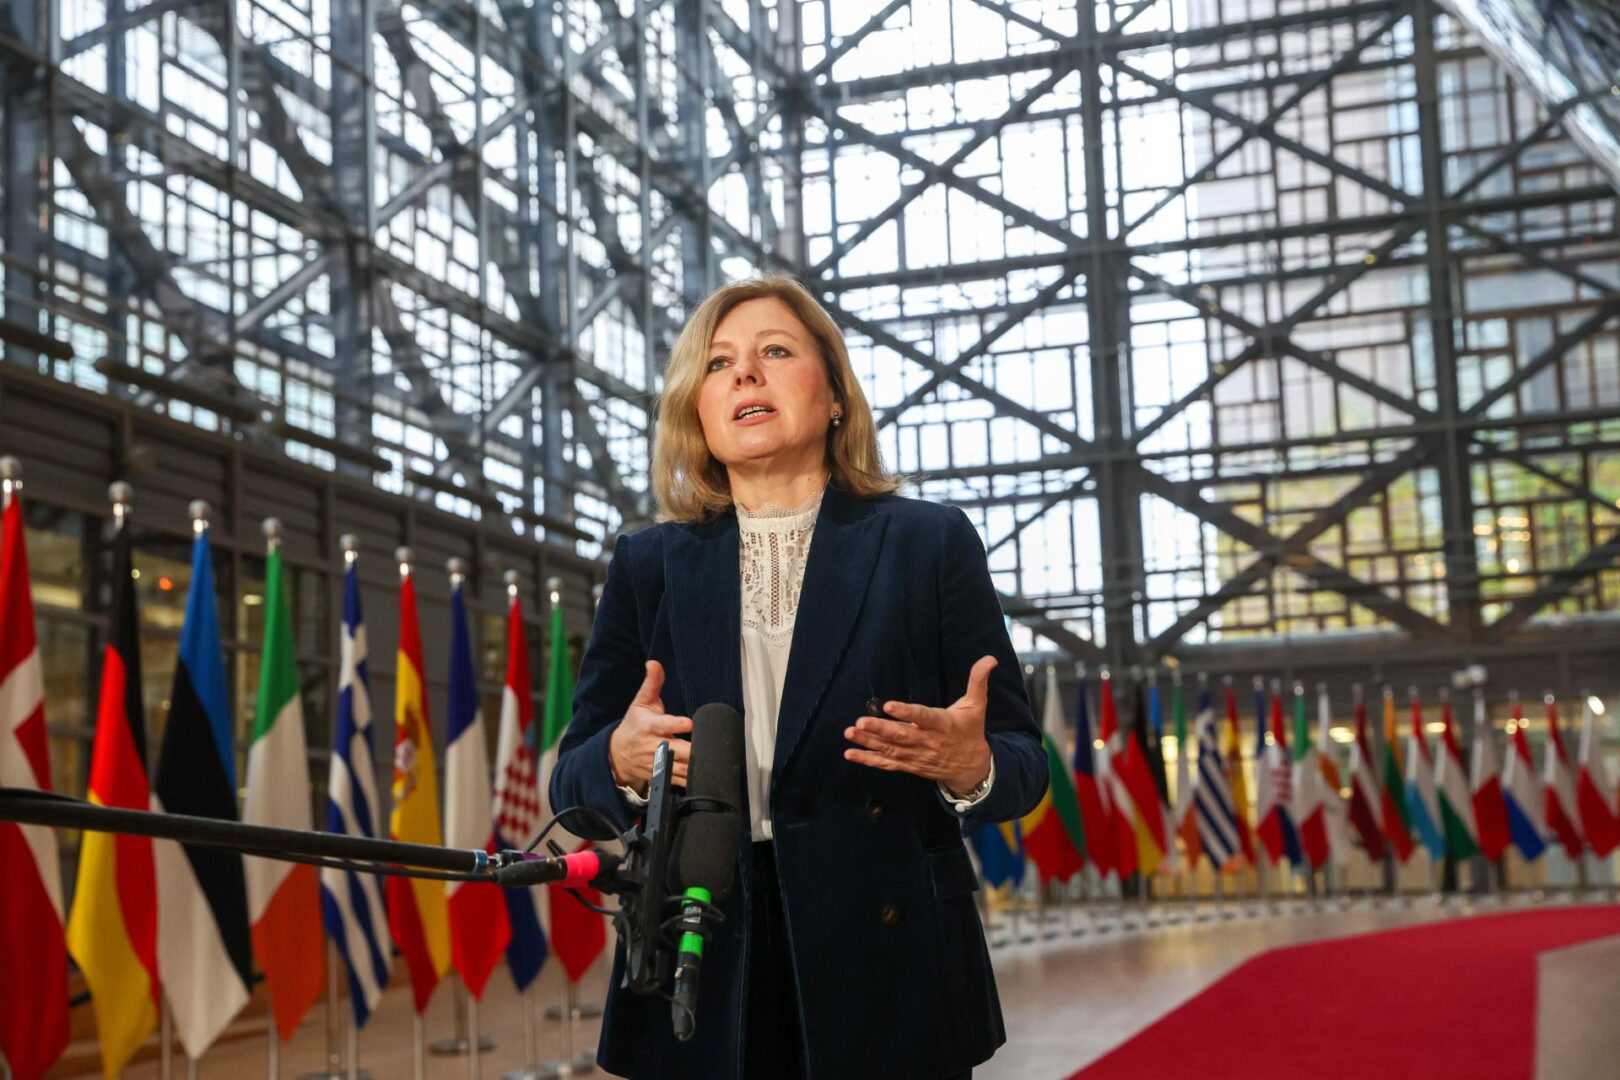 La vicepresidenta de la Comisión Europea Vera Jourova.